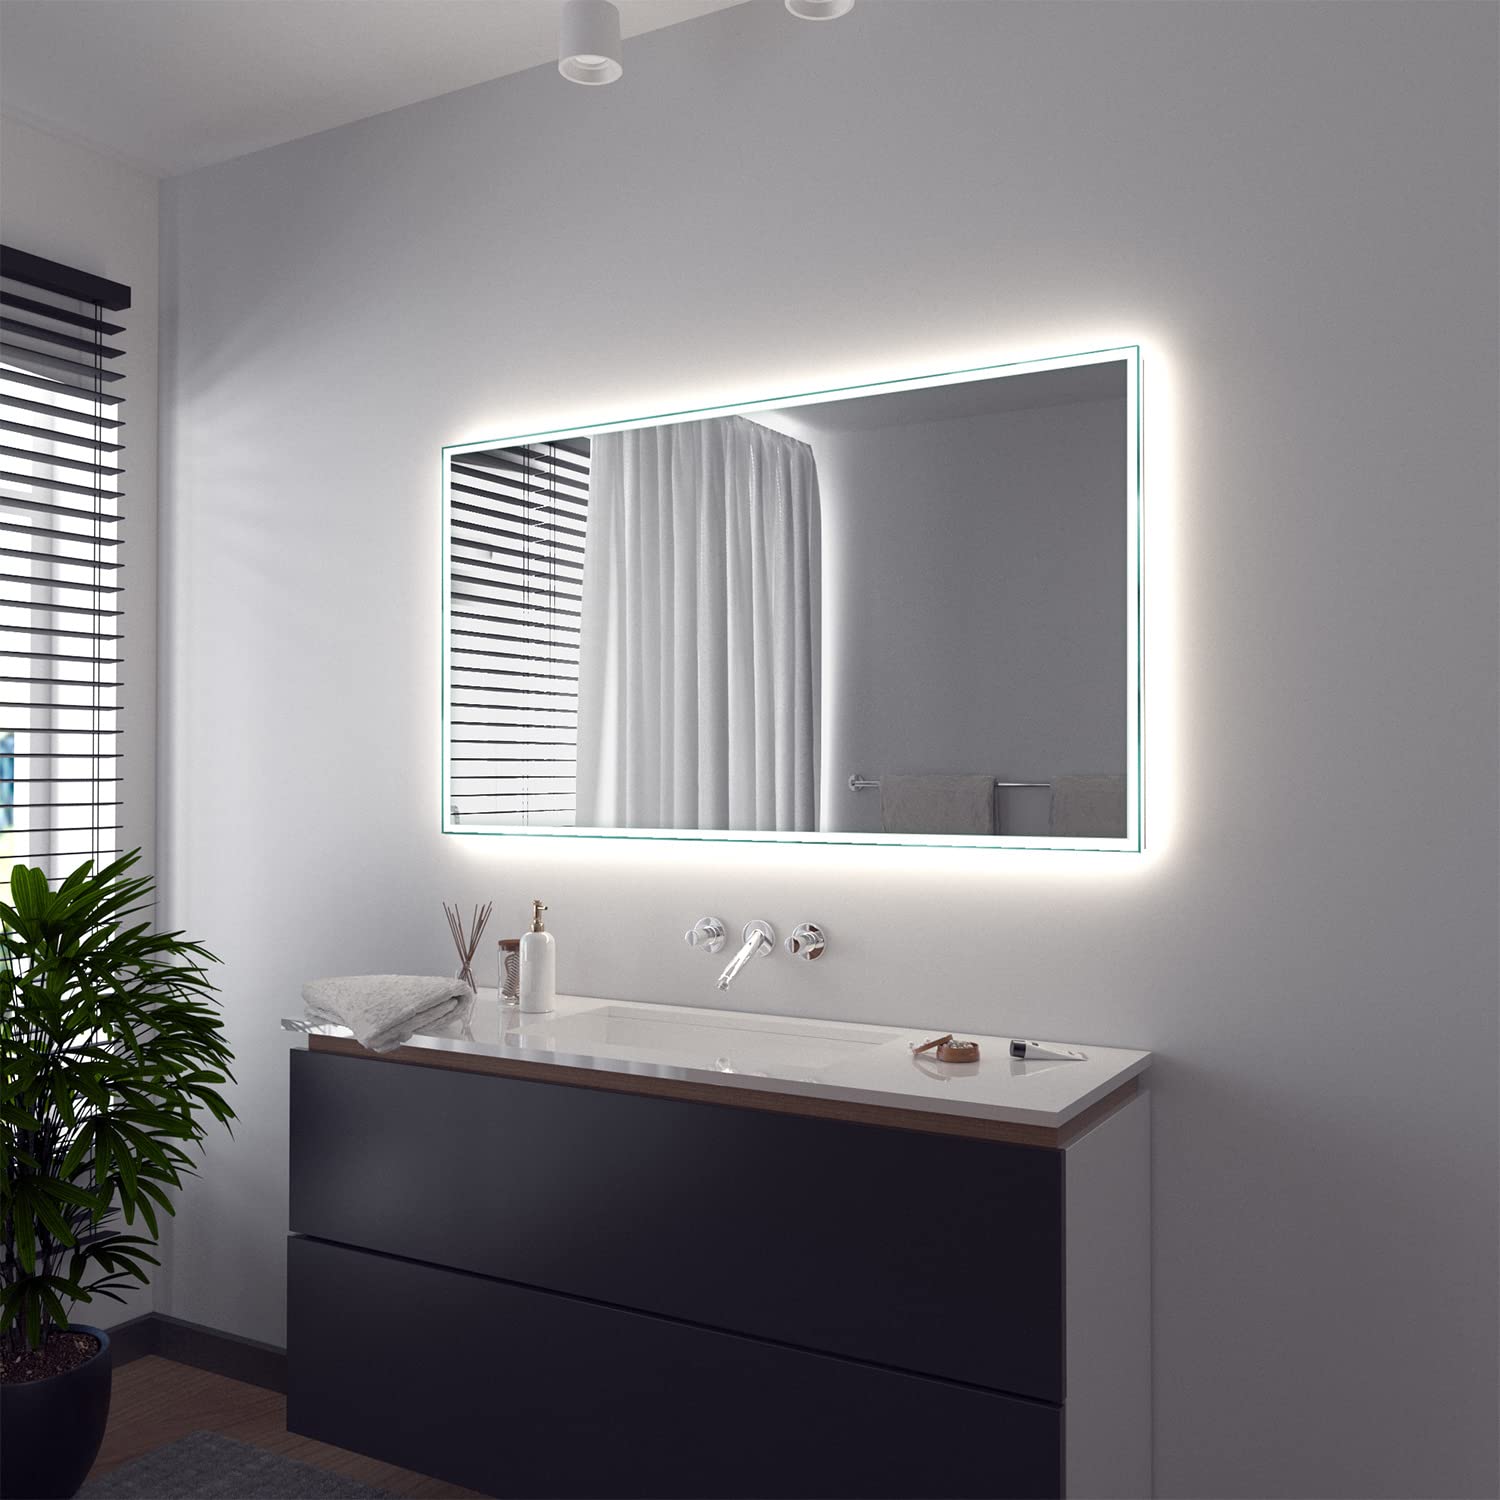 SARAR Wandspiegel mit rundum LED-Beleuchtung 140x80 cm Made in Germany Vittoria eckiger Badspiegel Spiegel mit Beleuchtung Badezimmerspiegel